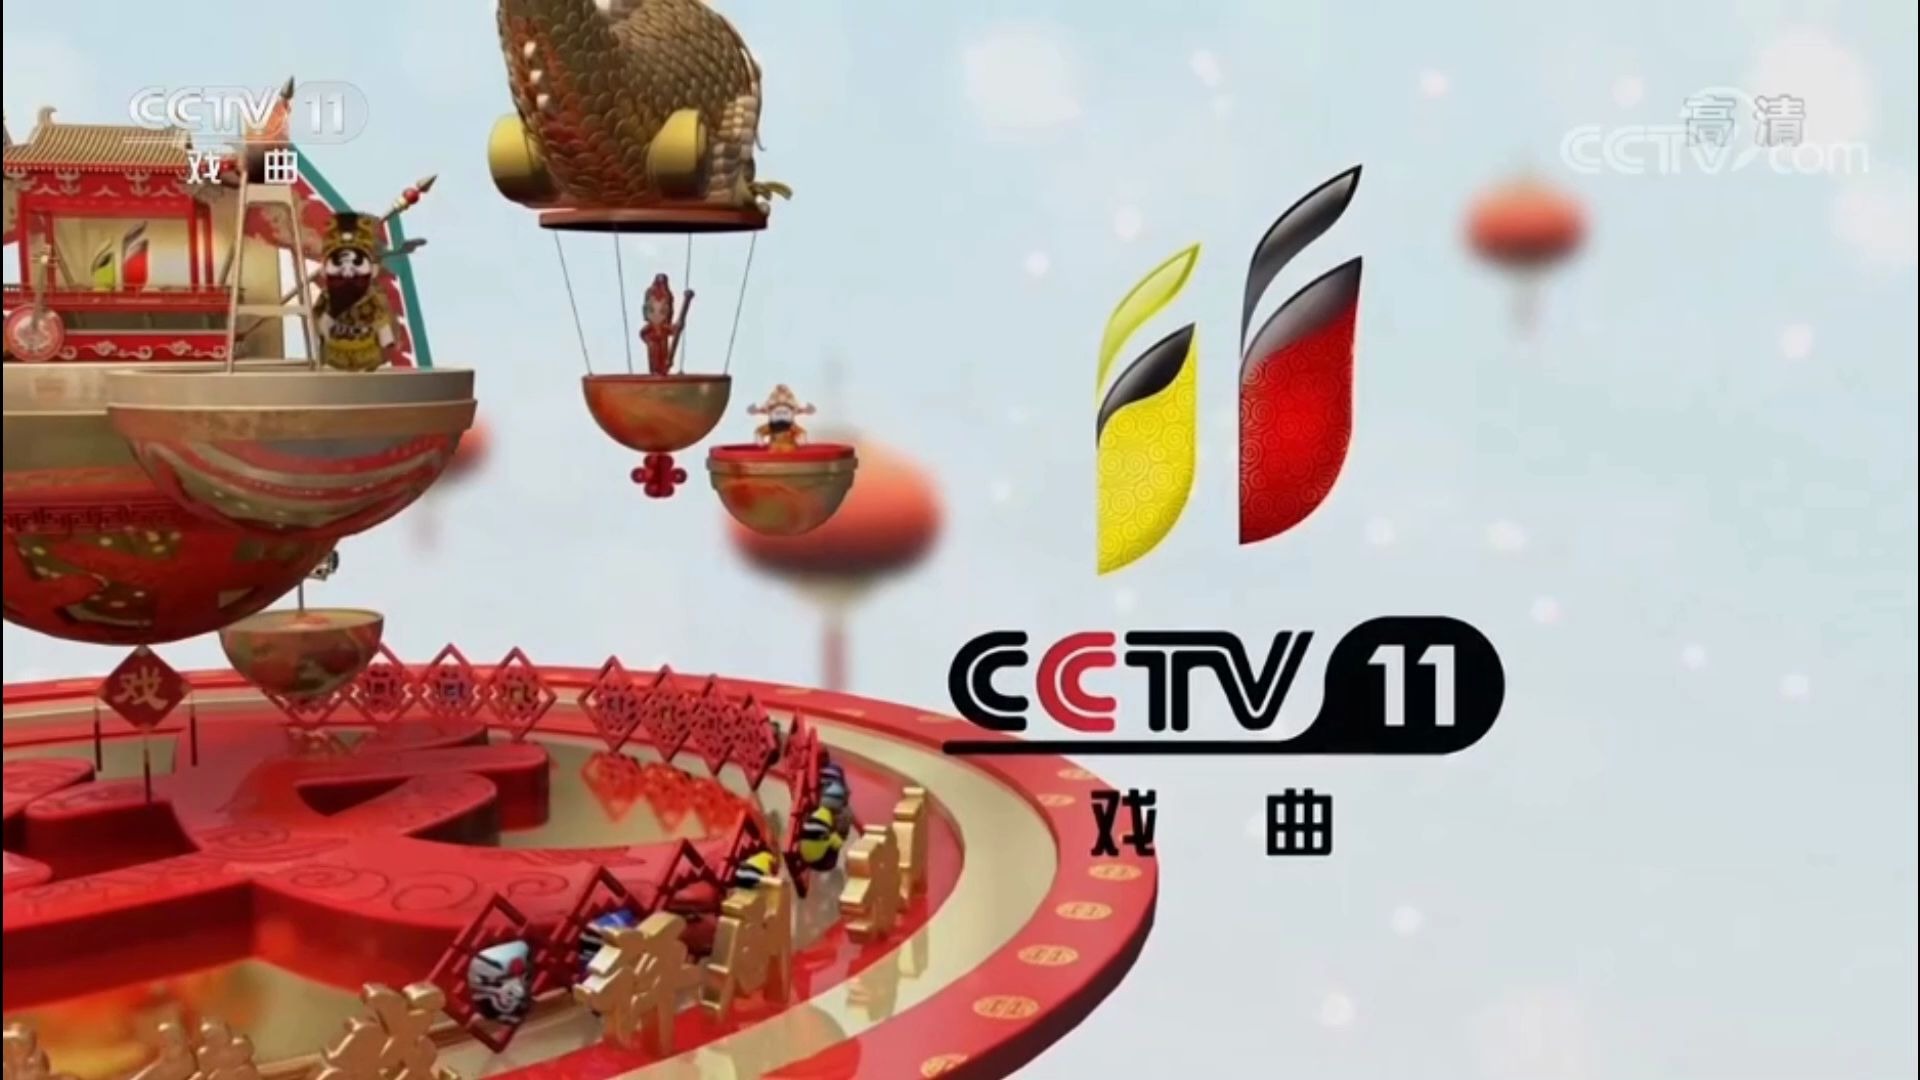 cctv11戏曲频道图片